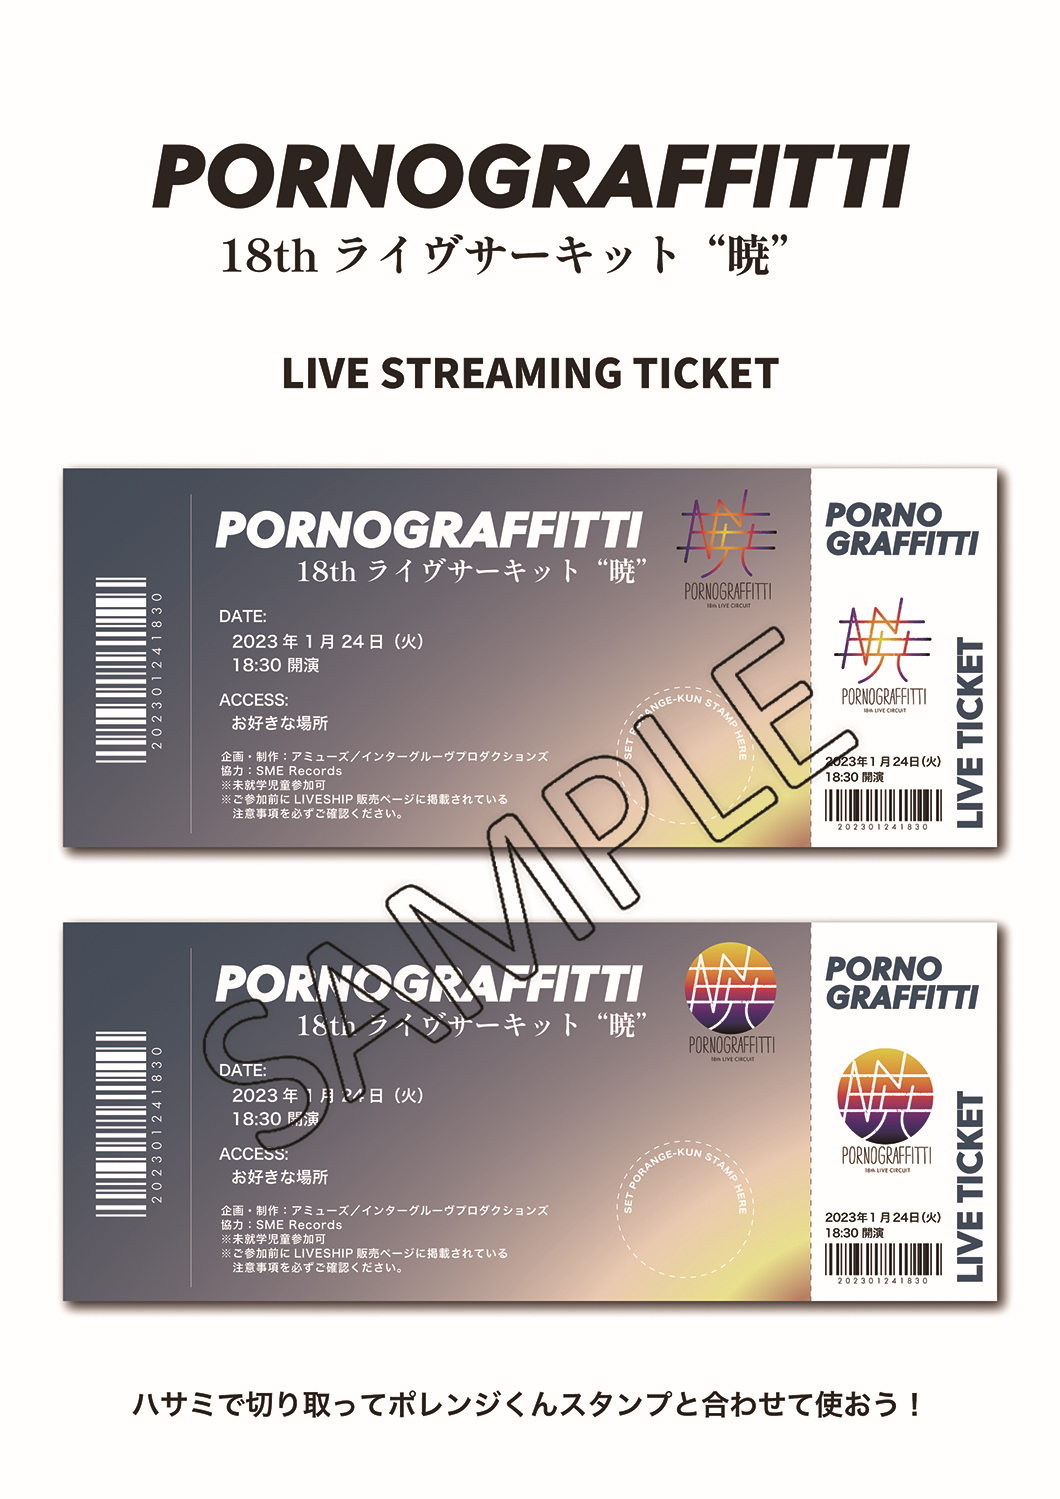 ポルノグラフィティ20周年ライブチケット2枚組[2019年9月8日(日)]